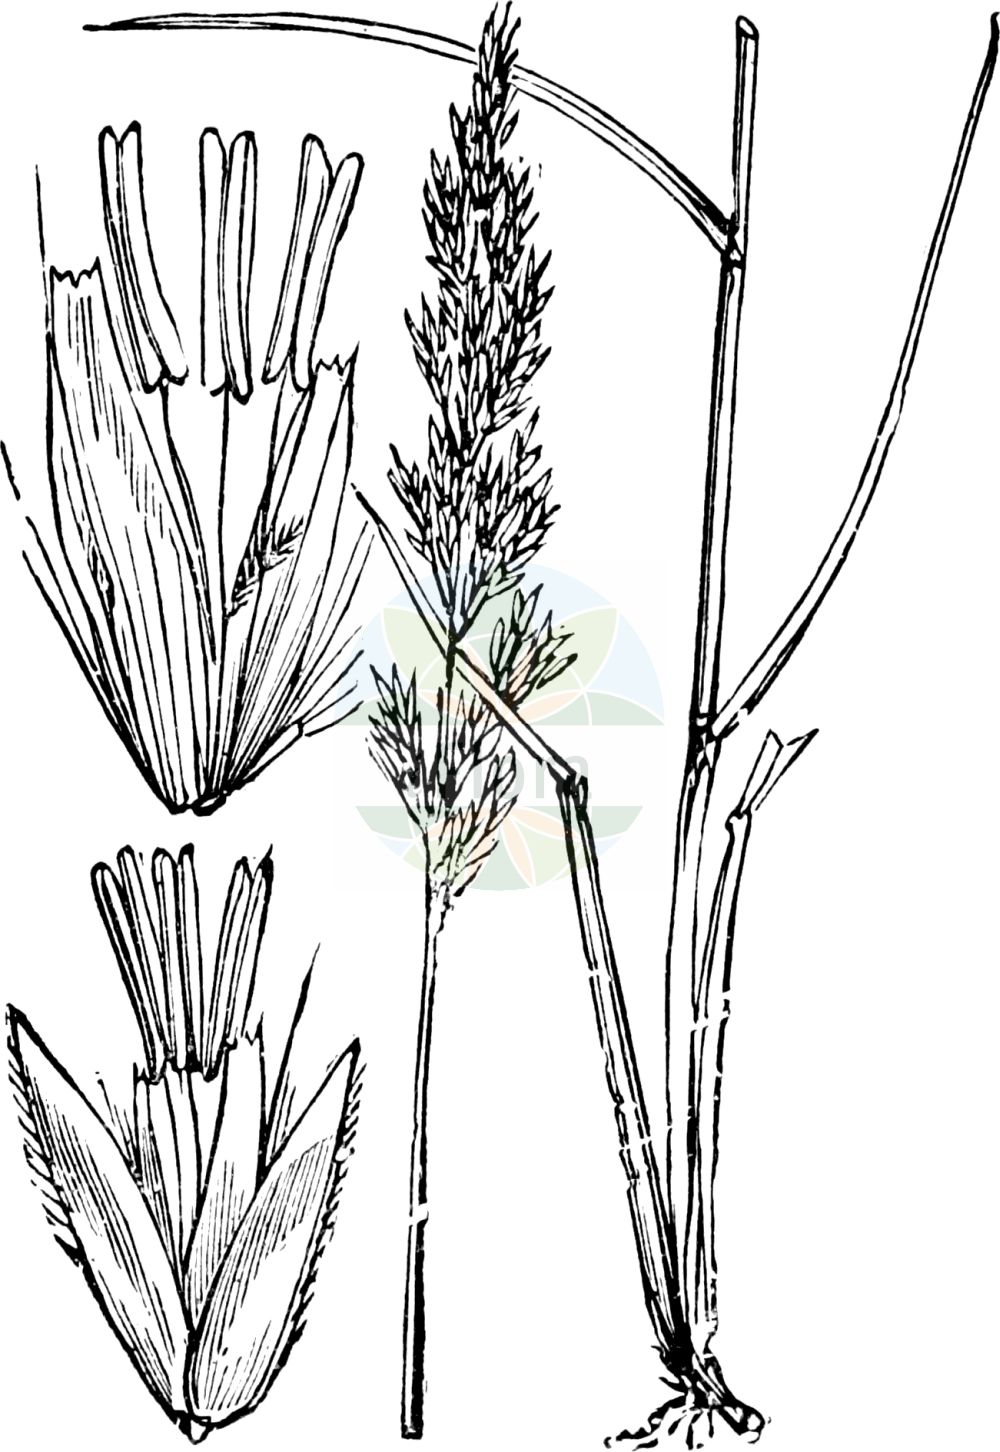 Historische Abbildung von Calamagrostis neglecta (Moor-Reitgras - Narrow Small-reed). Das Bild zeigt Blatt, Bluete, Frucht und Same. ---- Historical Drawing of Calamagrostis neglecta (Moor-Reitgras - Narrow Small-reed). The image is showing leaf, flower, fruit and seed.(Calamagrostis neglecta,Moor-Reitgras,Narrow Small-reed,Arundo neglecta,Arundo stricta,Calamagrostis neglecta,Calamagrostis stricta,Deyeuxia neglecta,Deyeuxia poaeoides,Moor-Reitgras,Übersehenes Reitgras,Narrow Small-reed,Slim-stem Reedgrass,Calamagrostis,Reitgras,Reedgrass,Poaceae,Süßgräser,Grass family,Blatt,Bluete,Frucht,Same,leaf,flower,fruit,seed,Fitch et al. (1880))